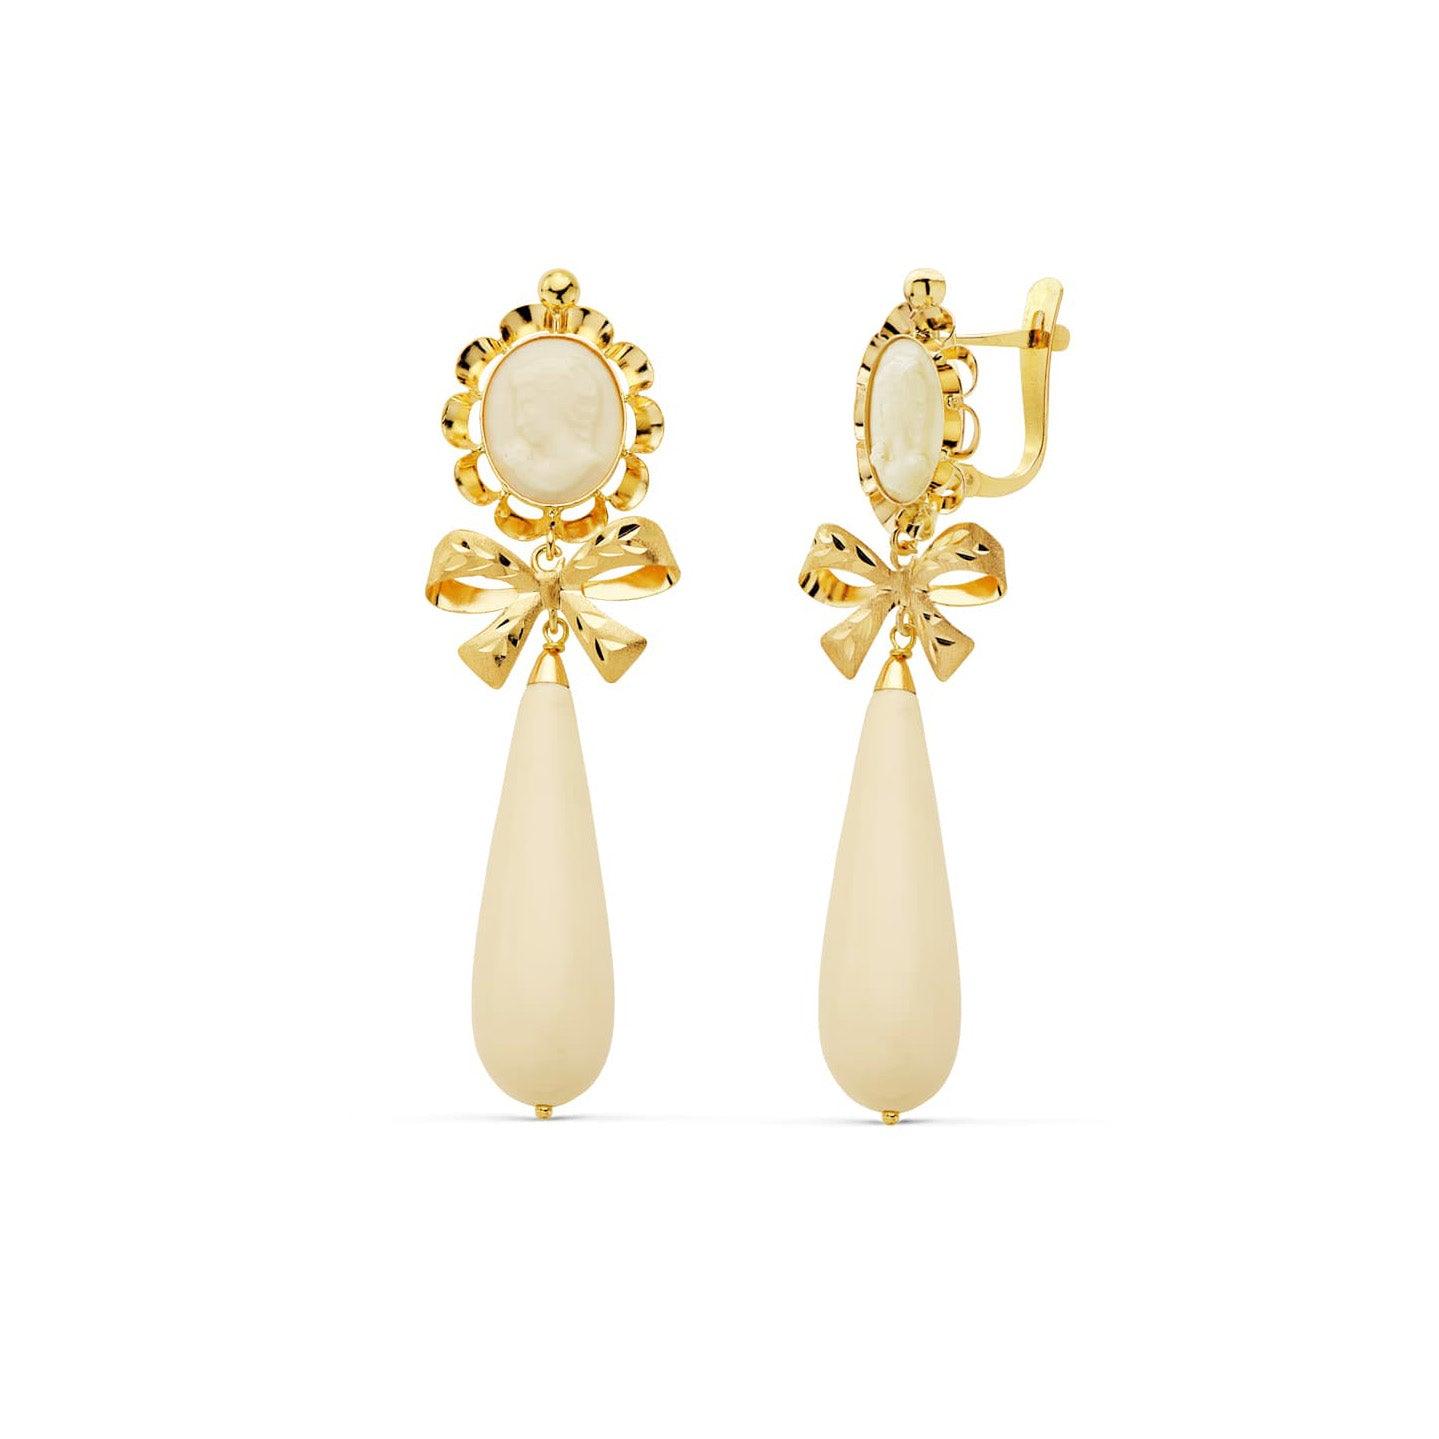 Boucles d'oreilles "Impératrice" camées en or jaune 18 carats et ivoire de synthèse - Maison Gabriel